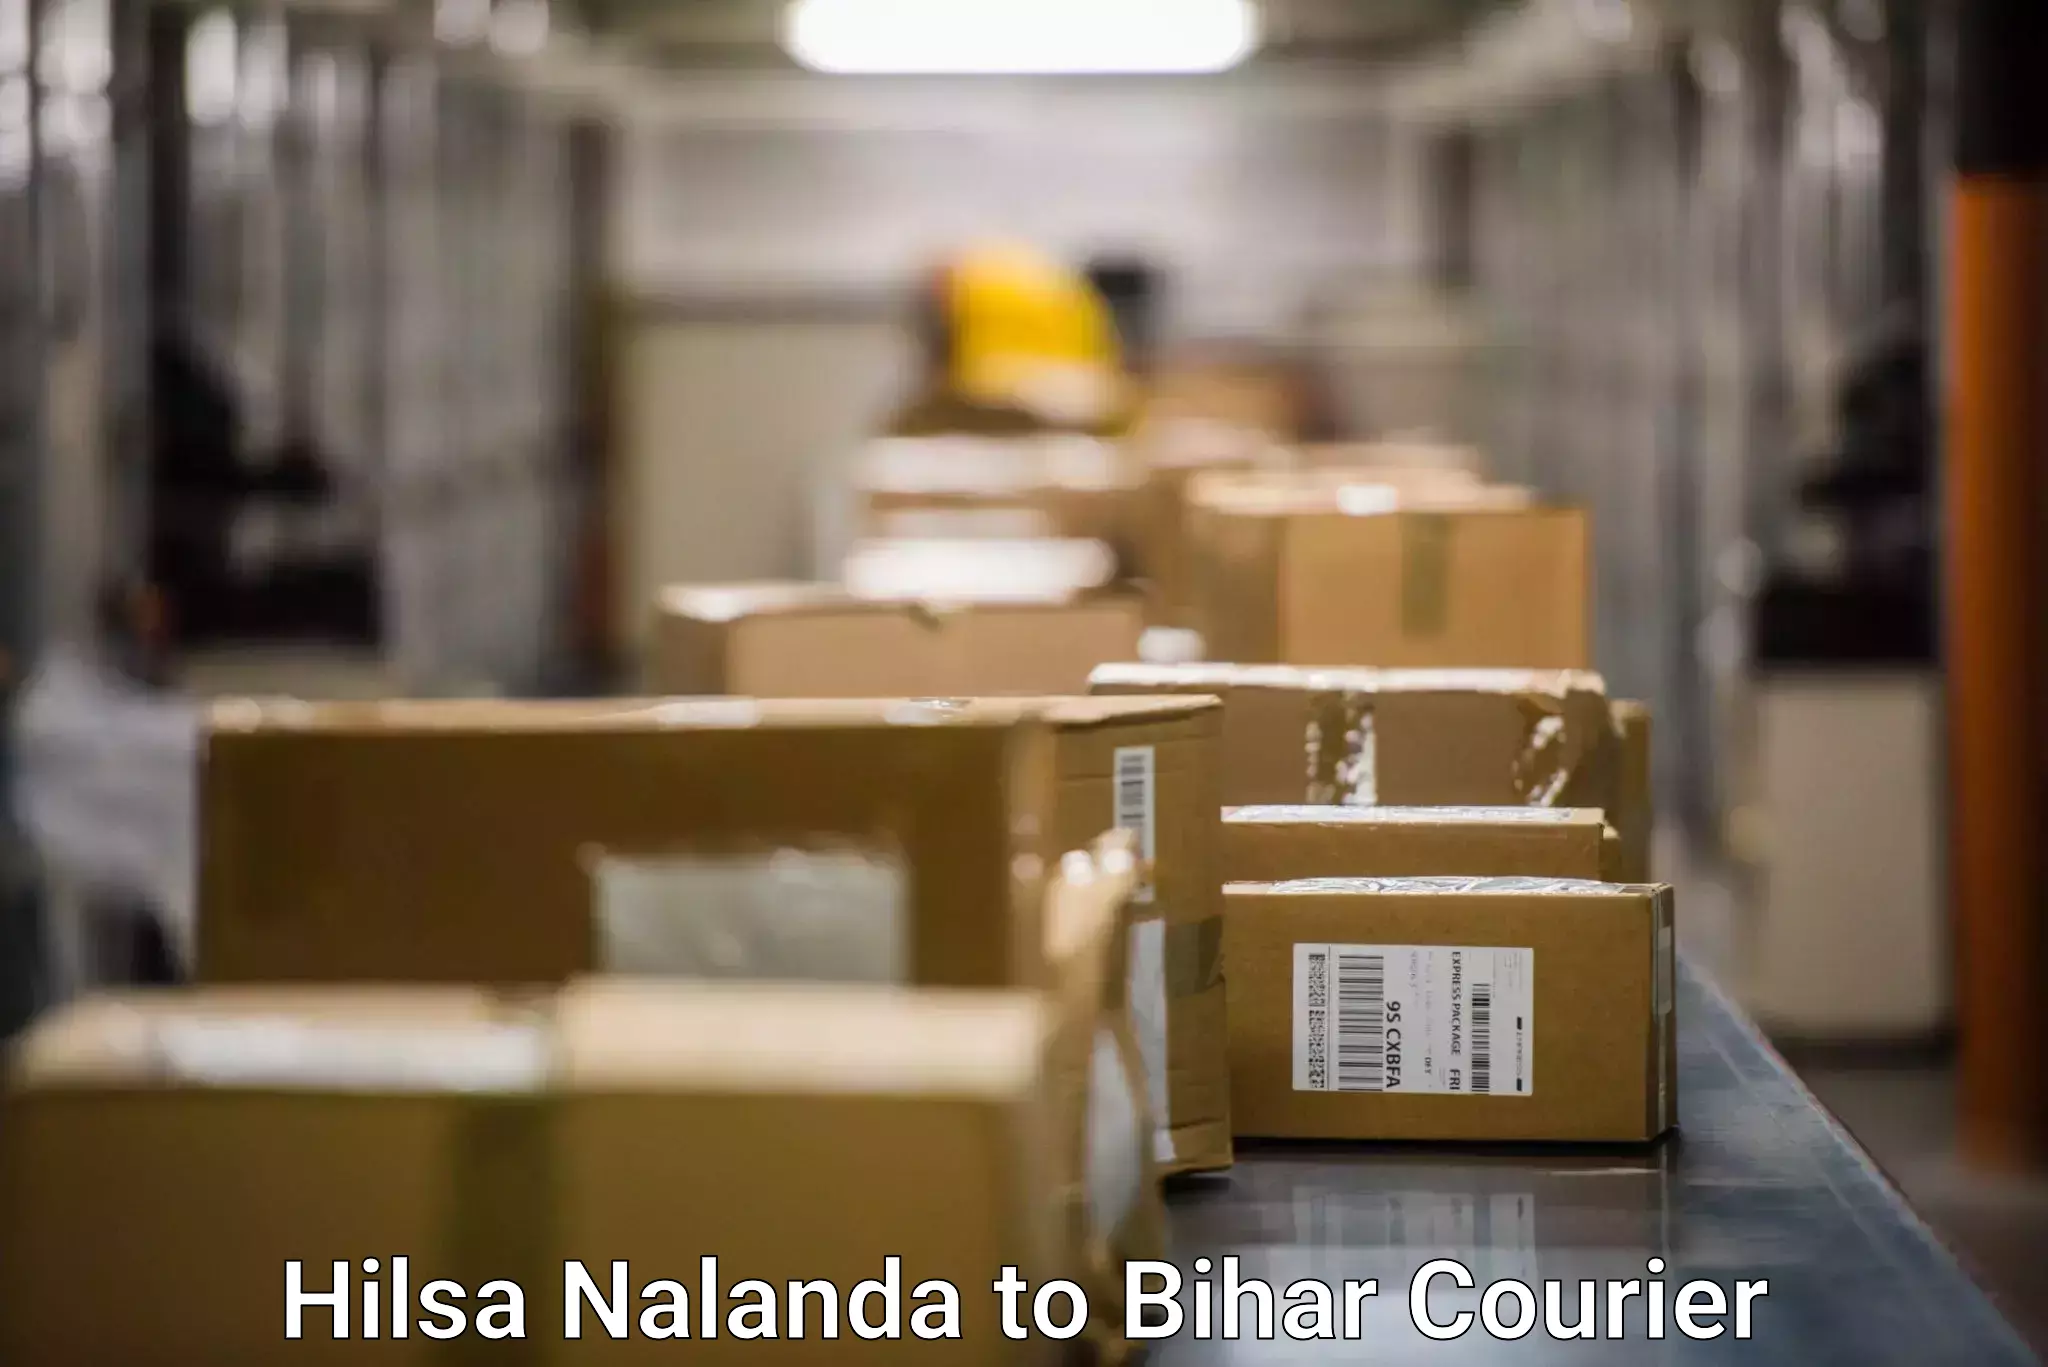 Customer-centric shipping Hilsa Nalanda to Chakia